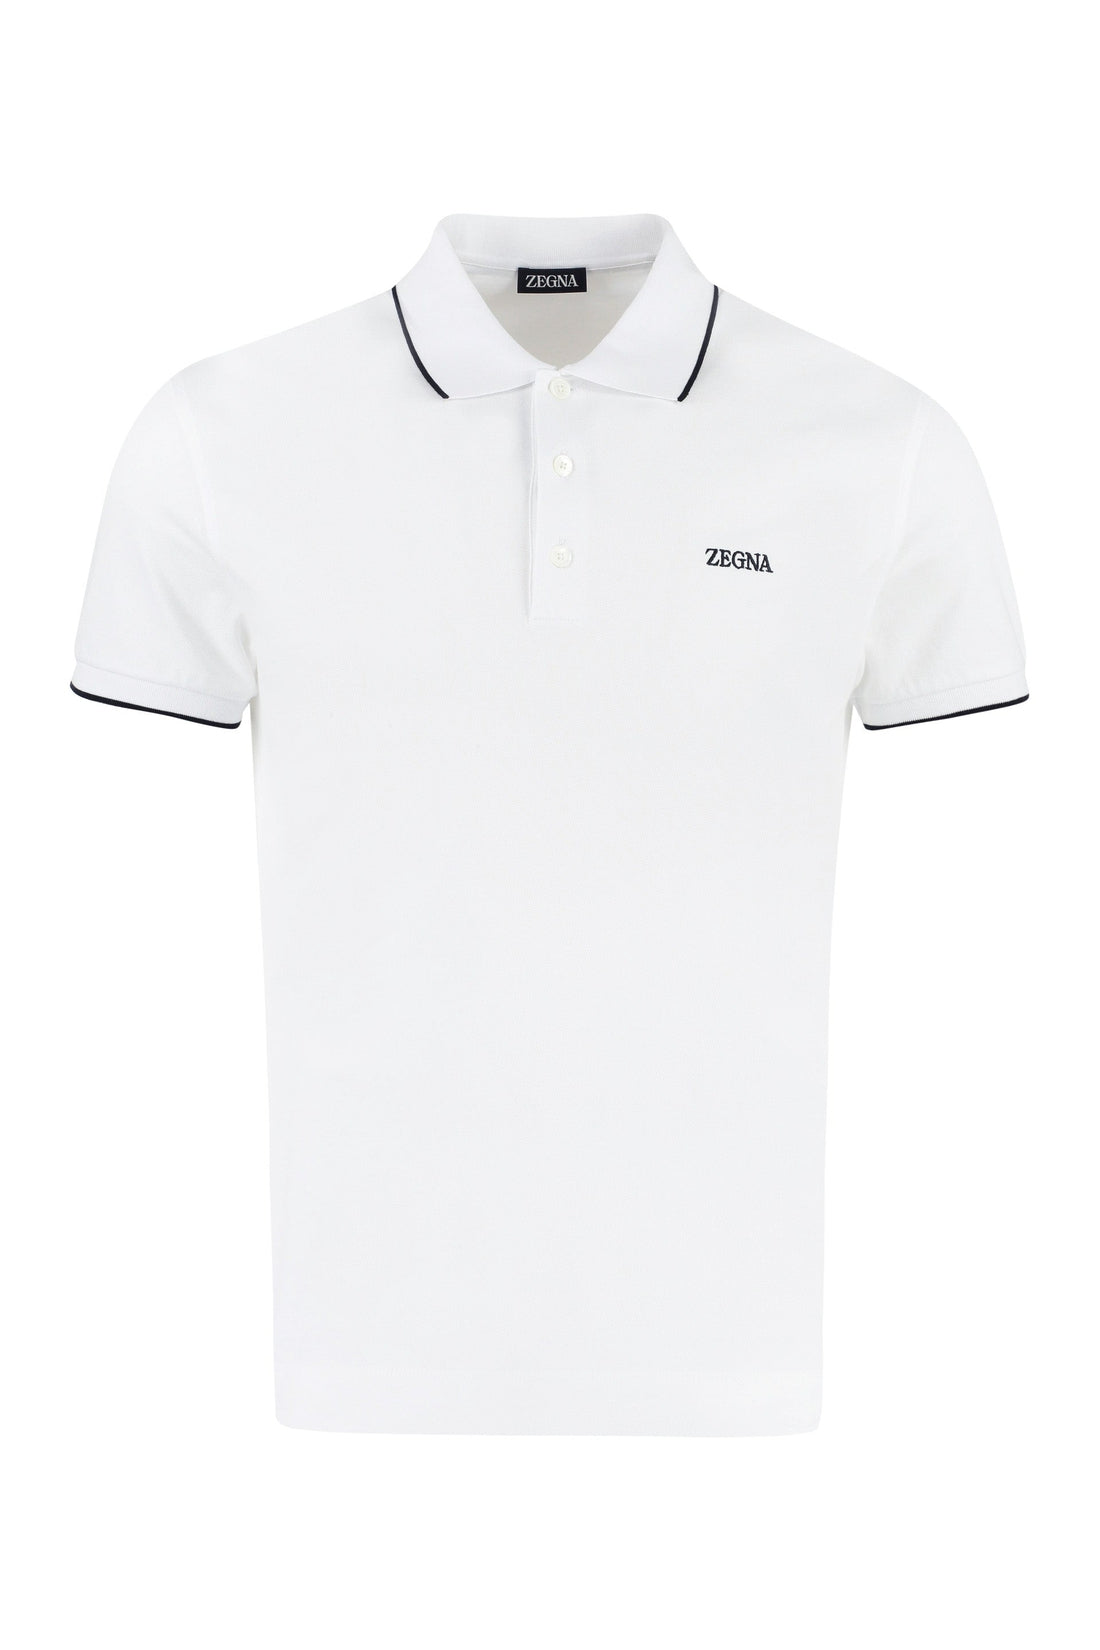 Zegna-OUTLET-SALE-Logo print cotton polo shirt-ARCHIVIST